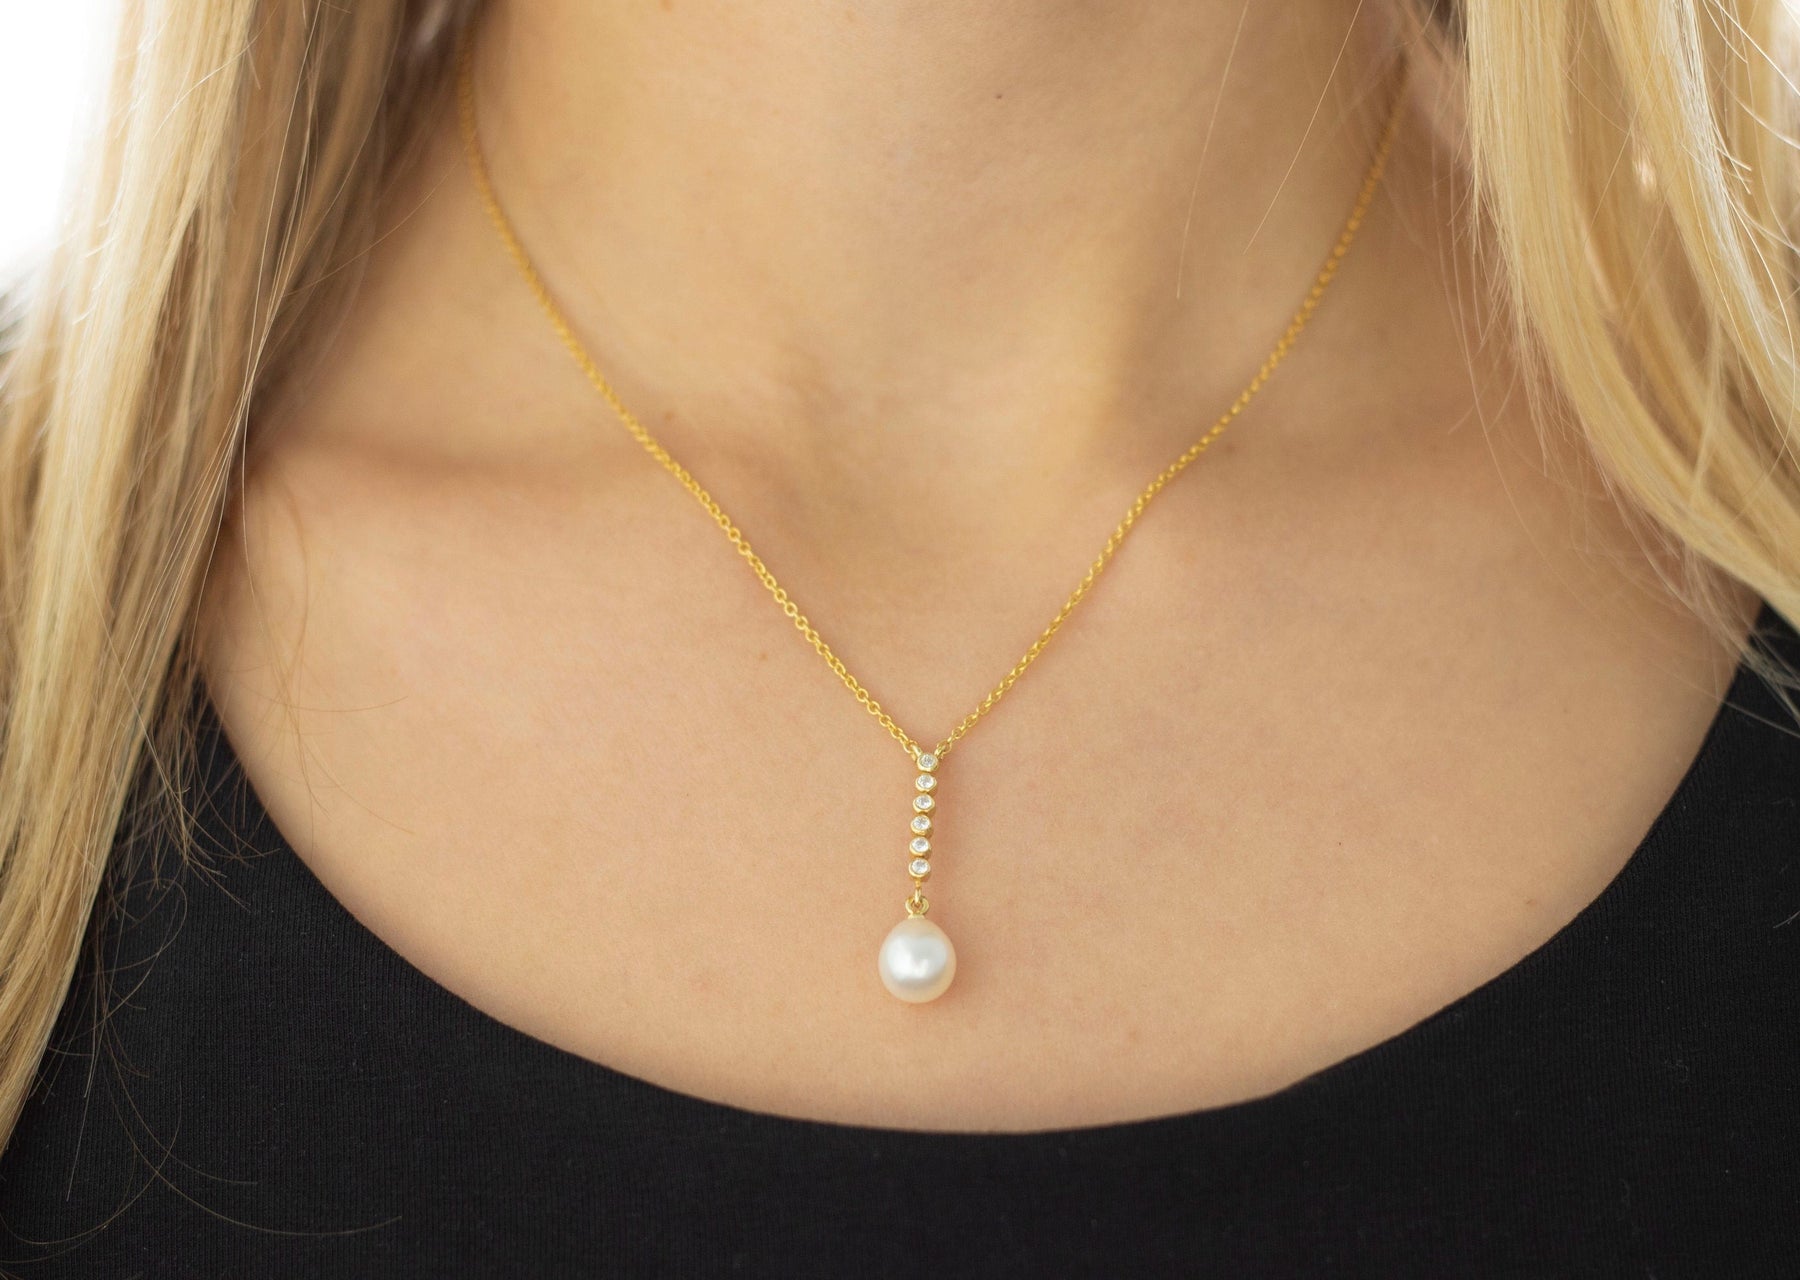 Goldkette 585 mit Süßwasserperle und Diamanten, 585 Braut Kette in Y-Form, elegante Halskette mit Perle, handgefertigt